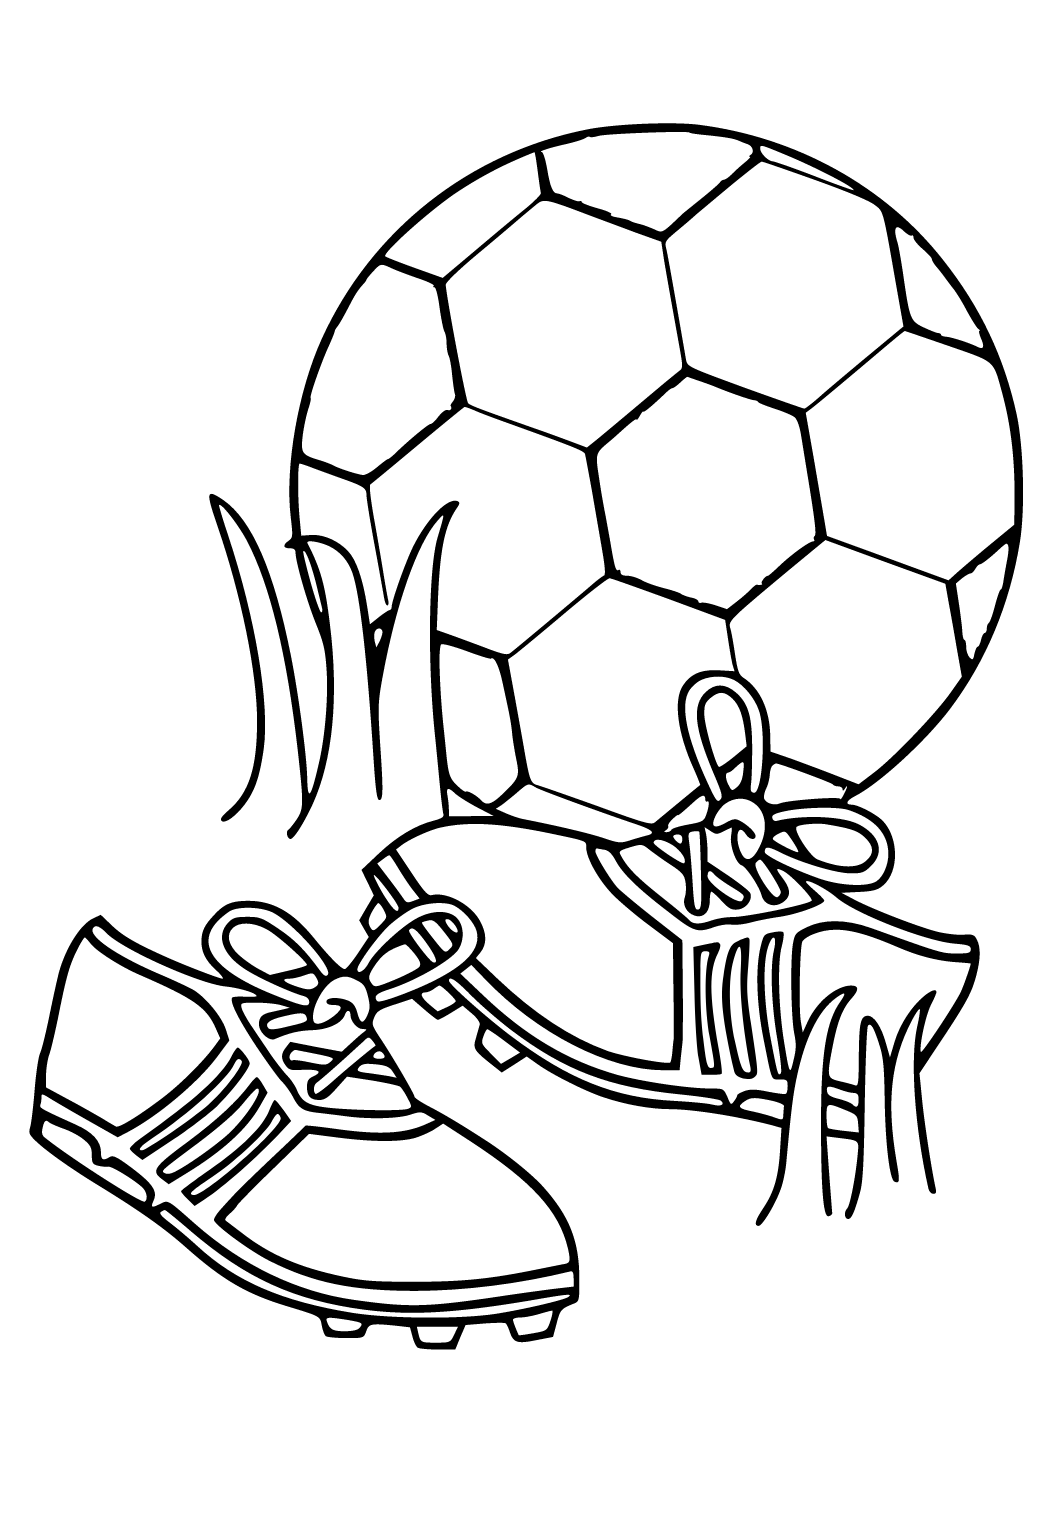 Dibujos de fútbol para colorear, descargar e imprimir | Colorear imágenes